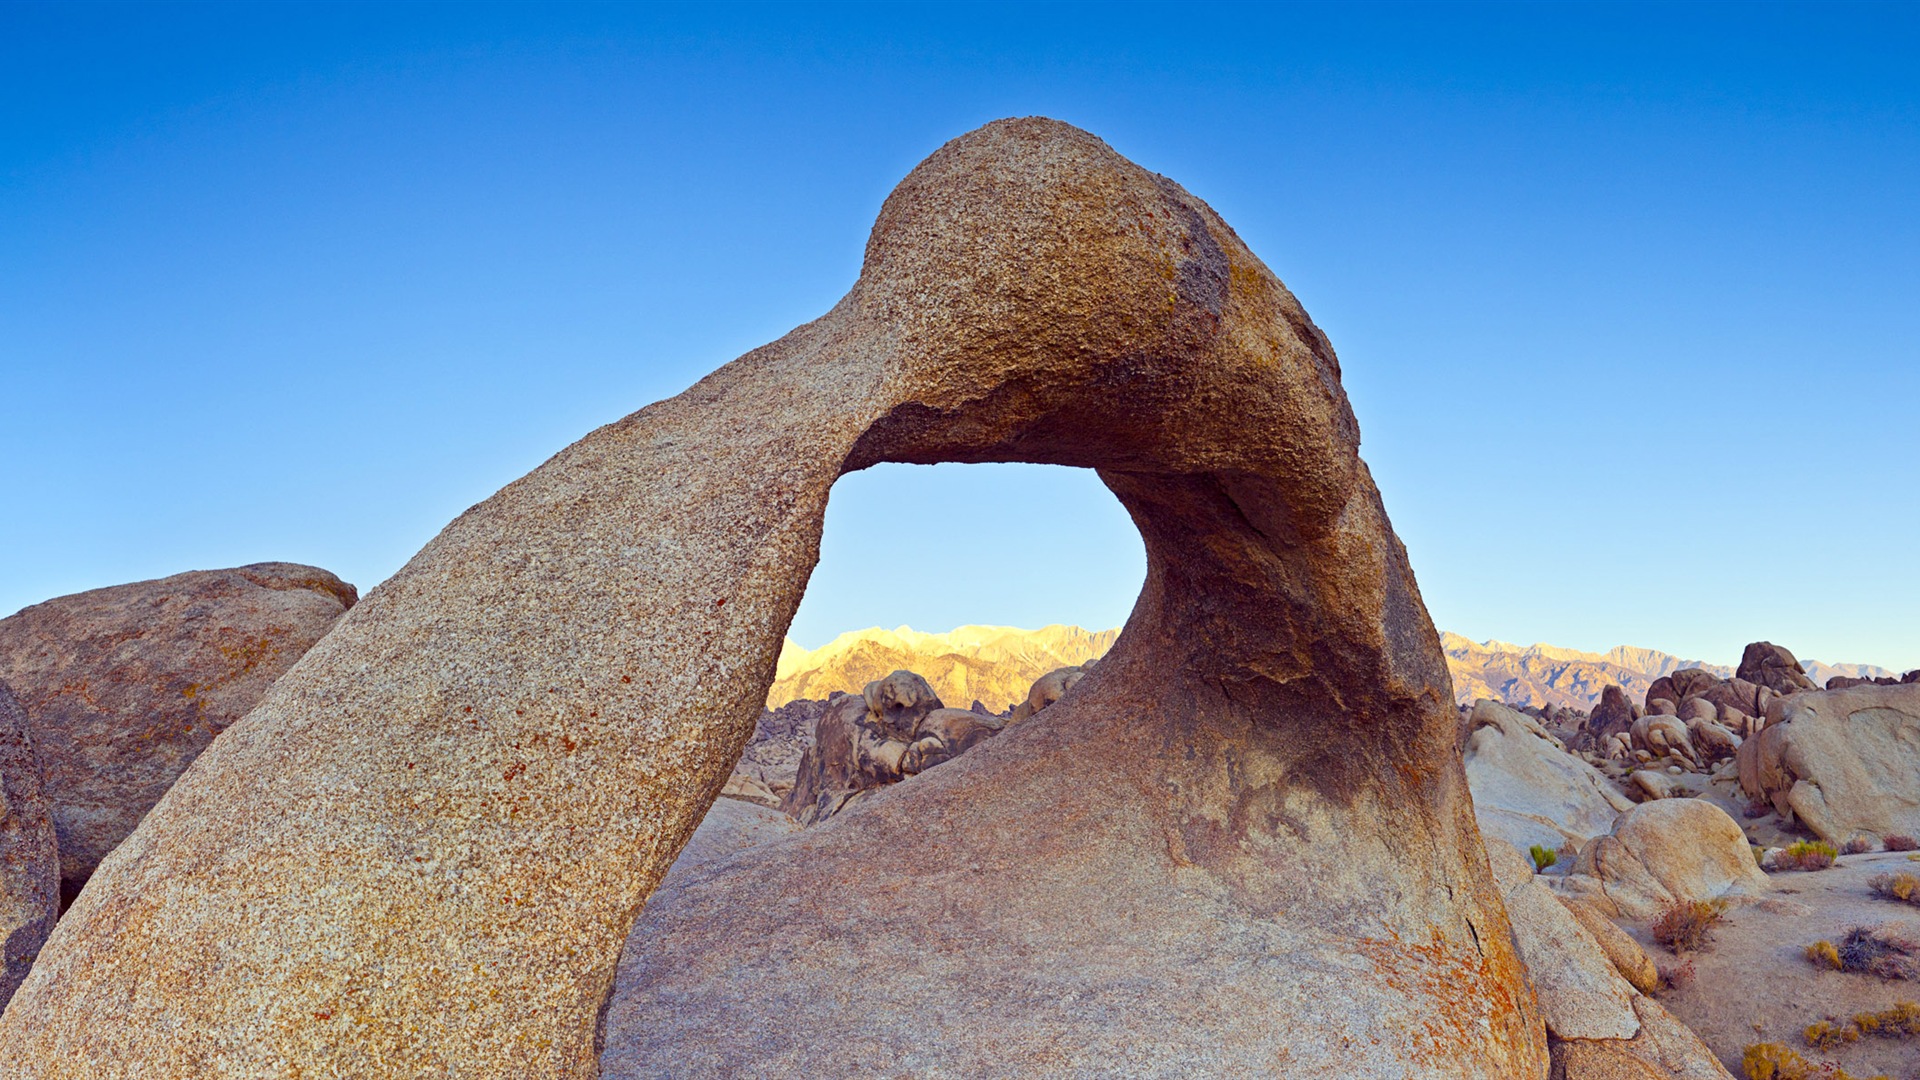 Les déserts chauds et arides, de Windows 8 fonds d'écran widescreen panoramique #5 - 1920x1080